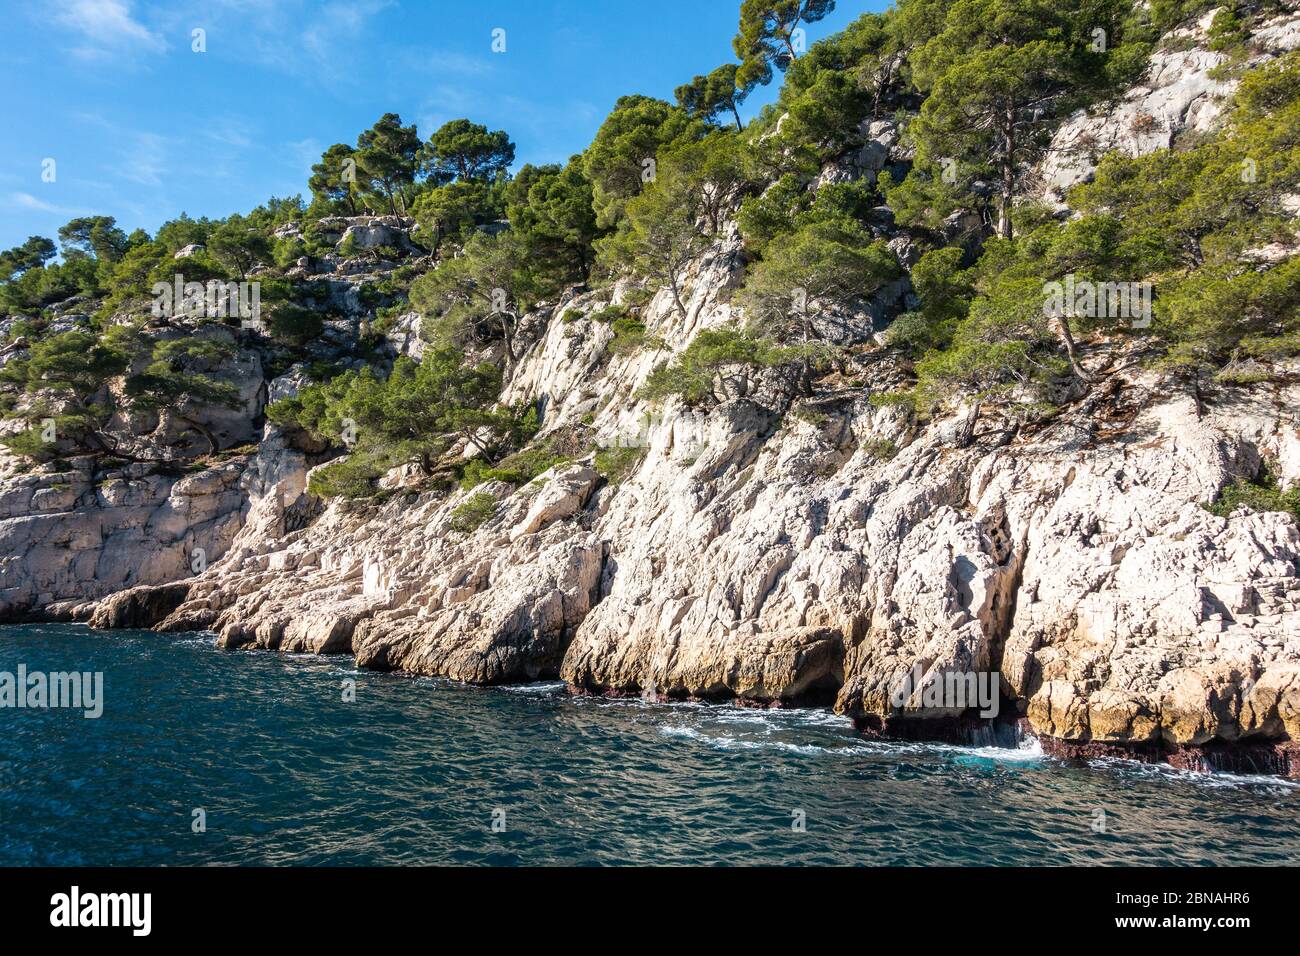 Falaises de calcaire pittoresques surplombant la mer Méditerranée au parc national des Calanques, France Banque D'Images